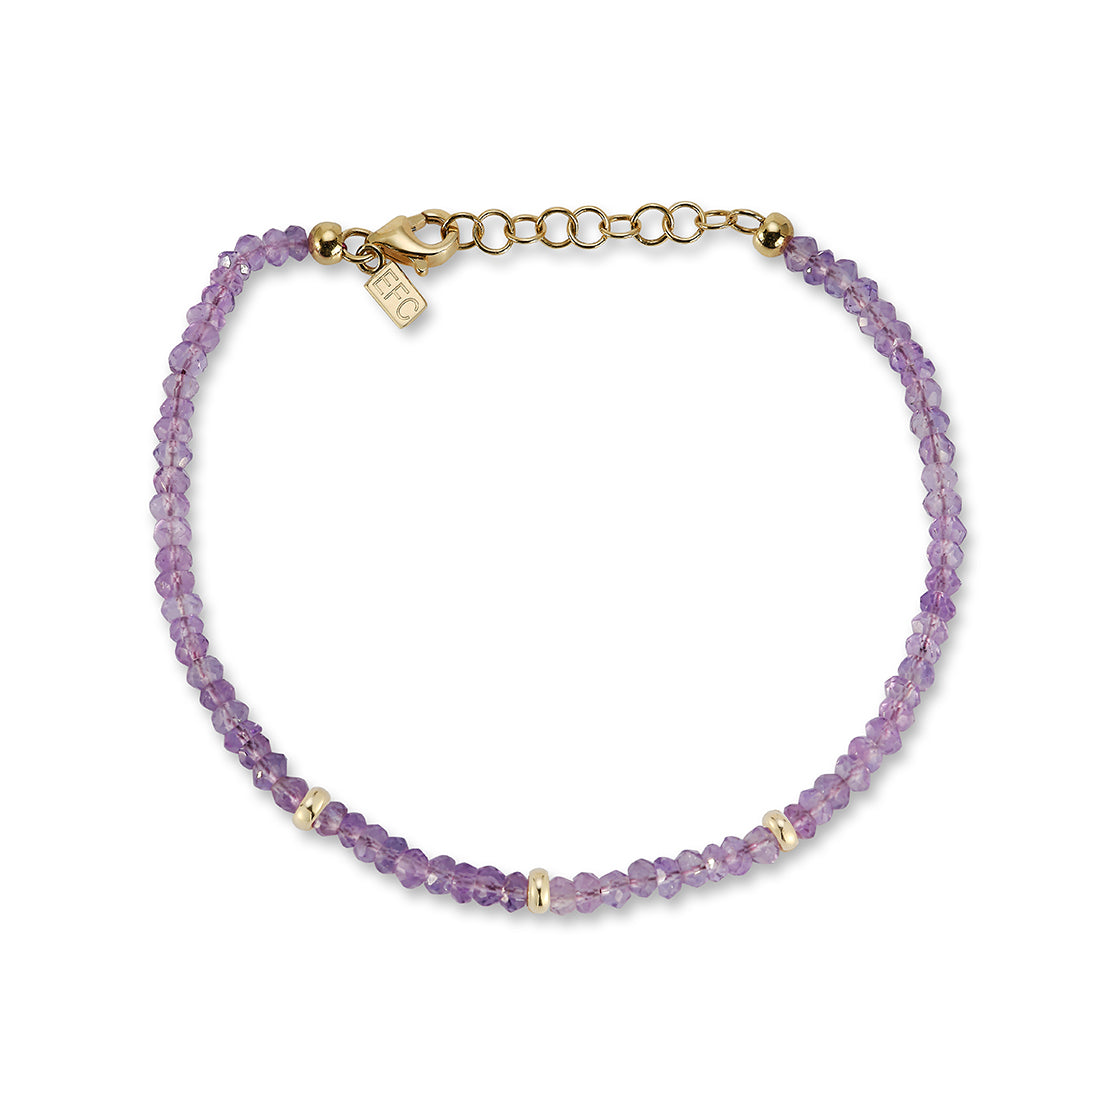 The Beaded Bracelet Gift Set - Amethyst / February Option